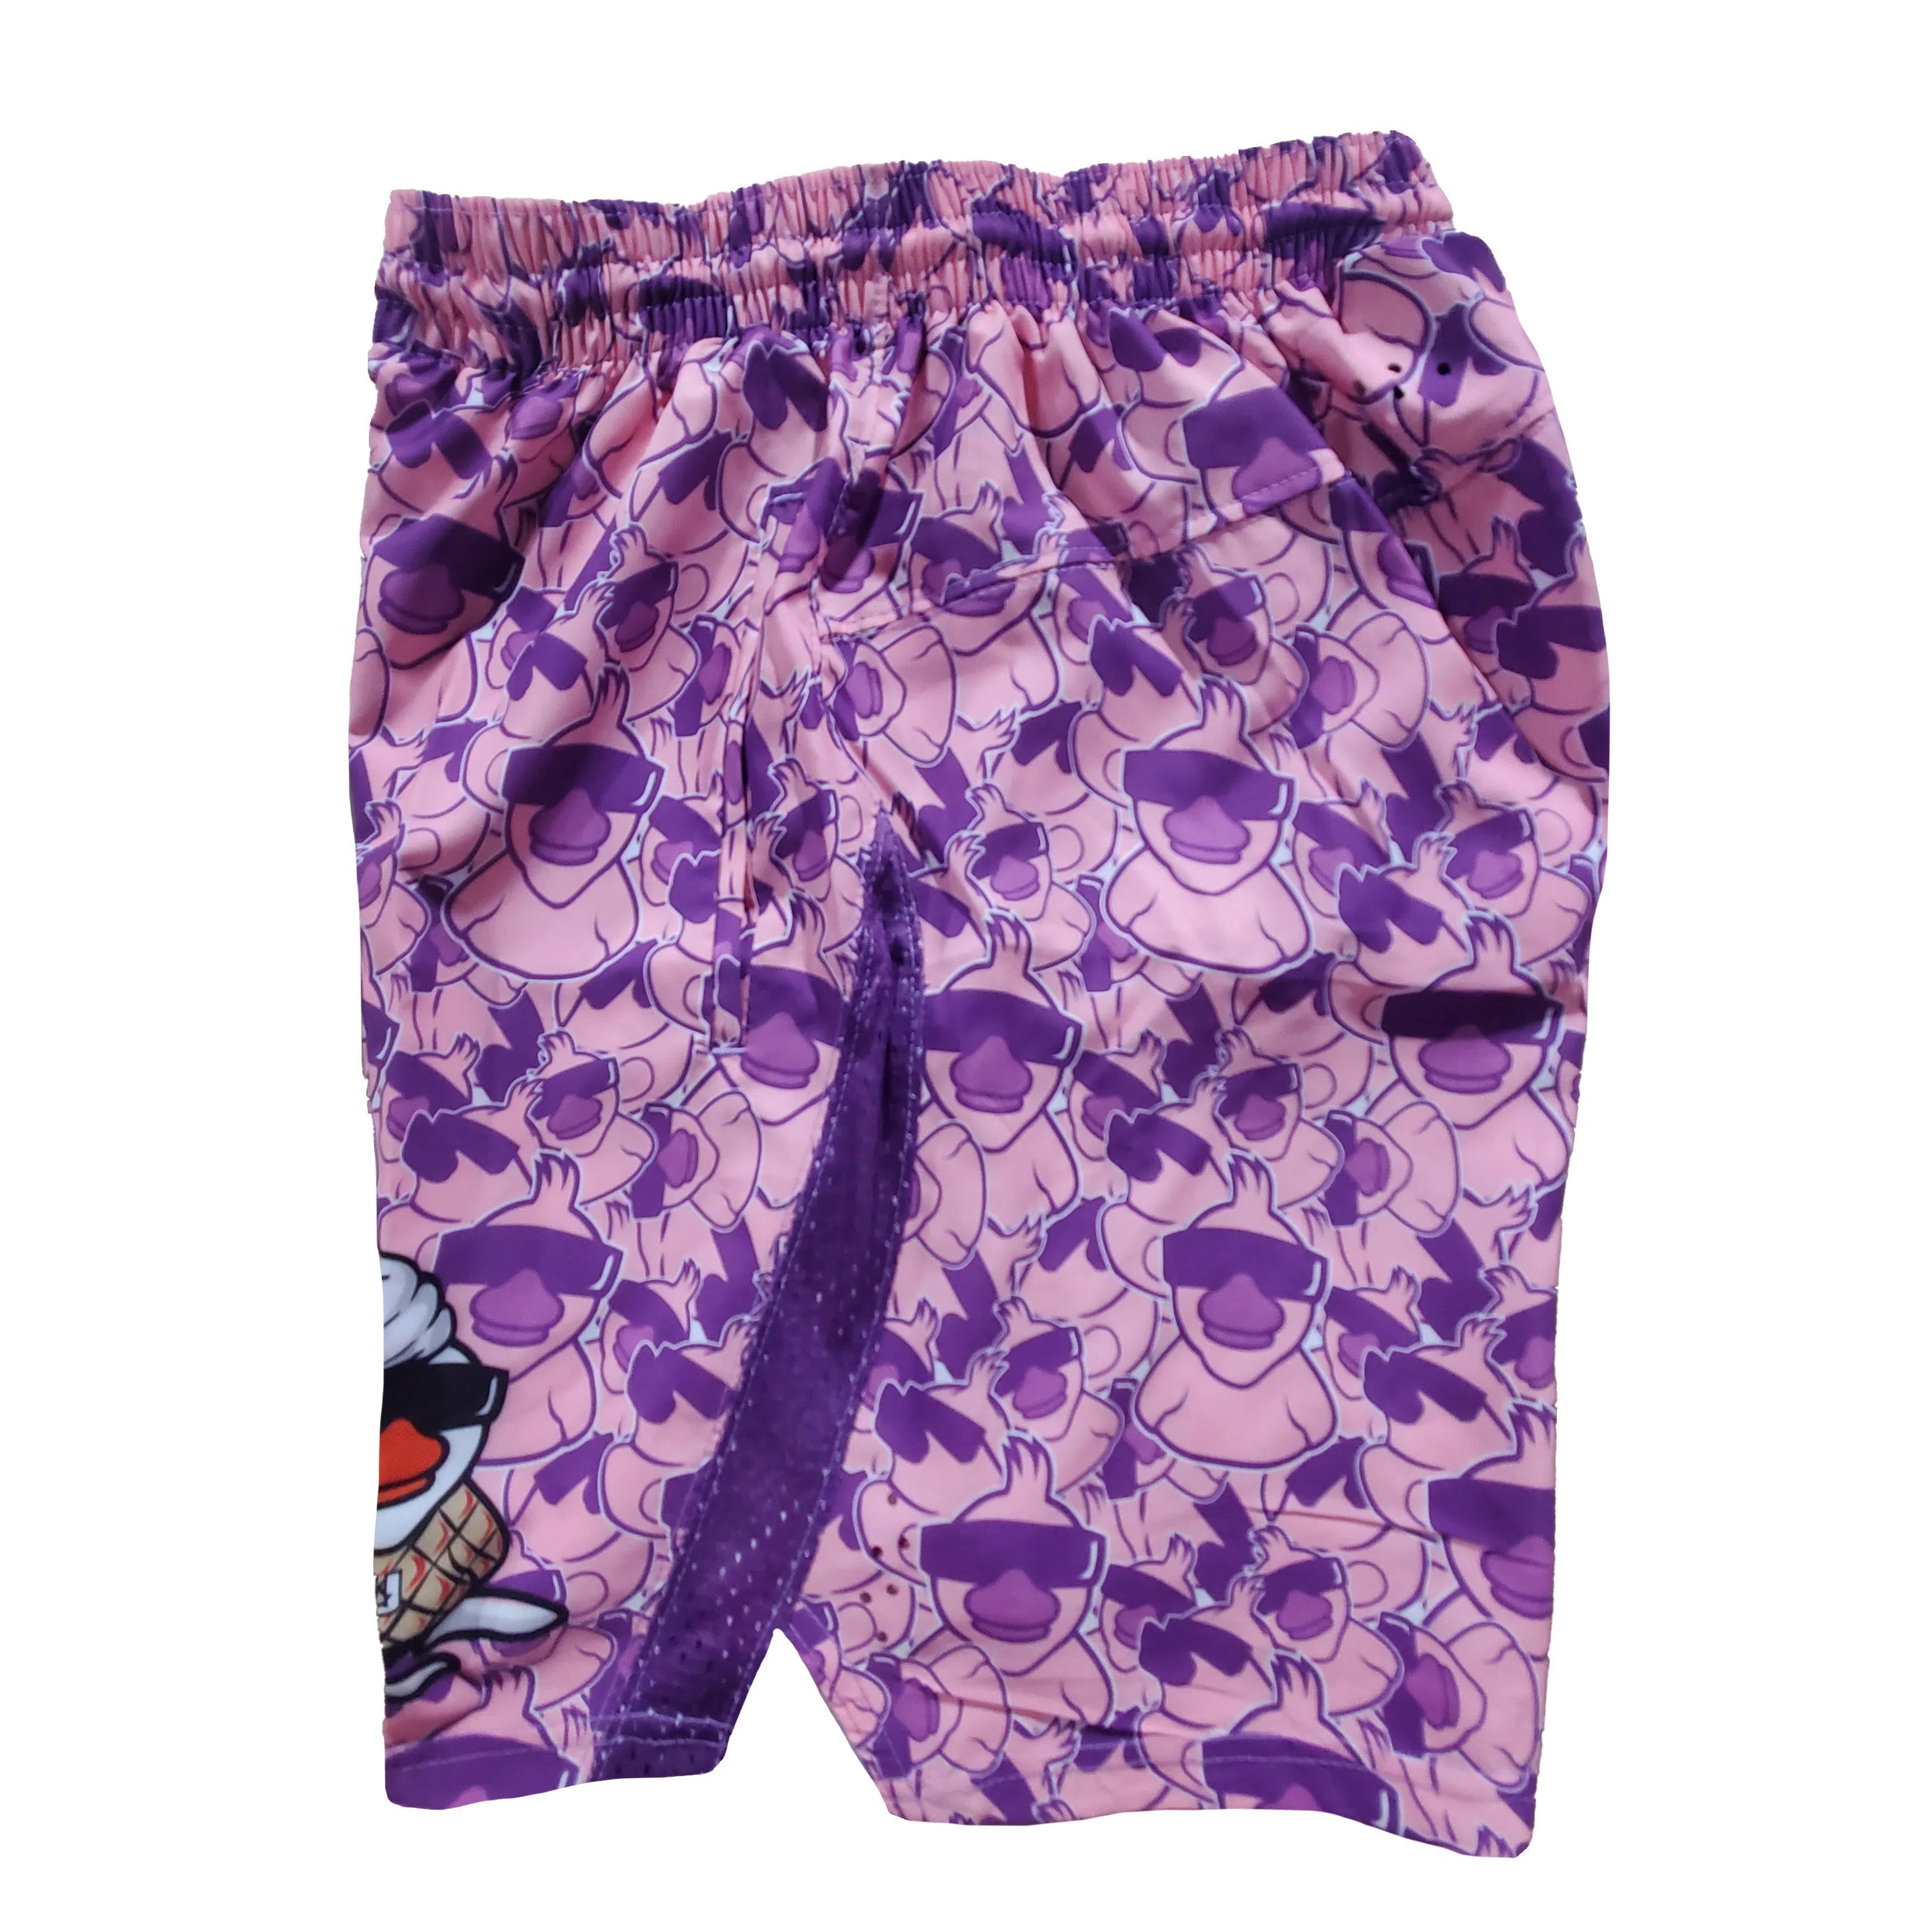 ULC Dye Sublimated Shorts